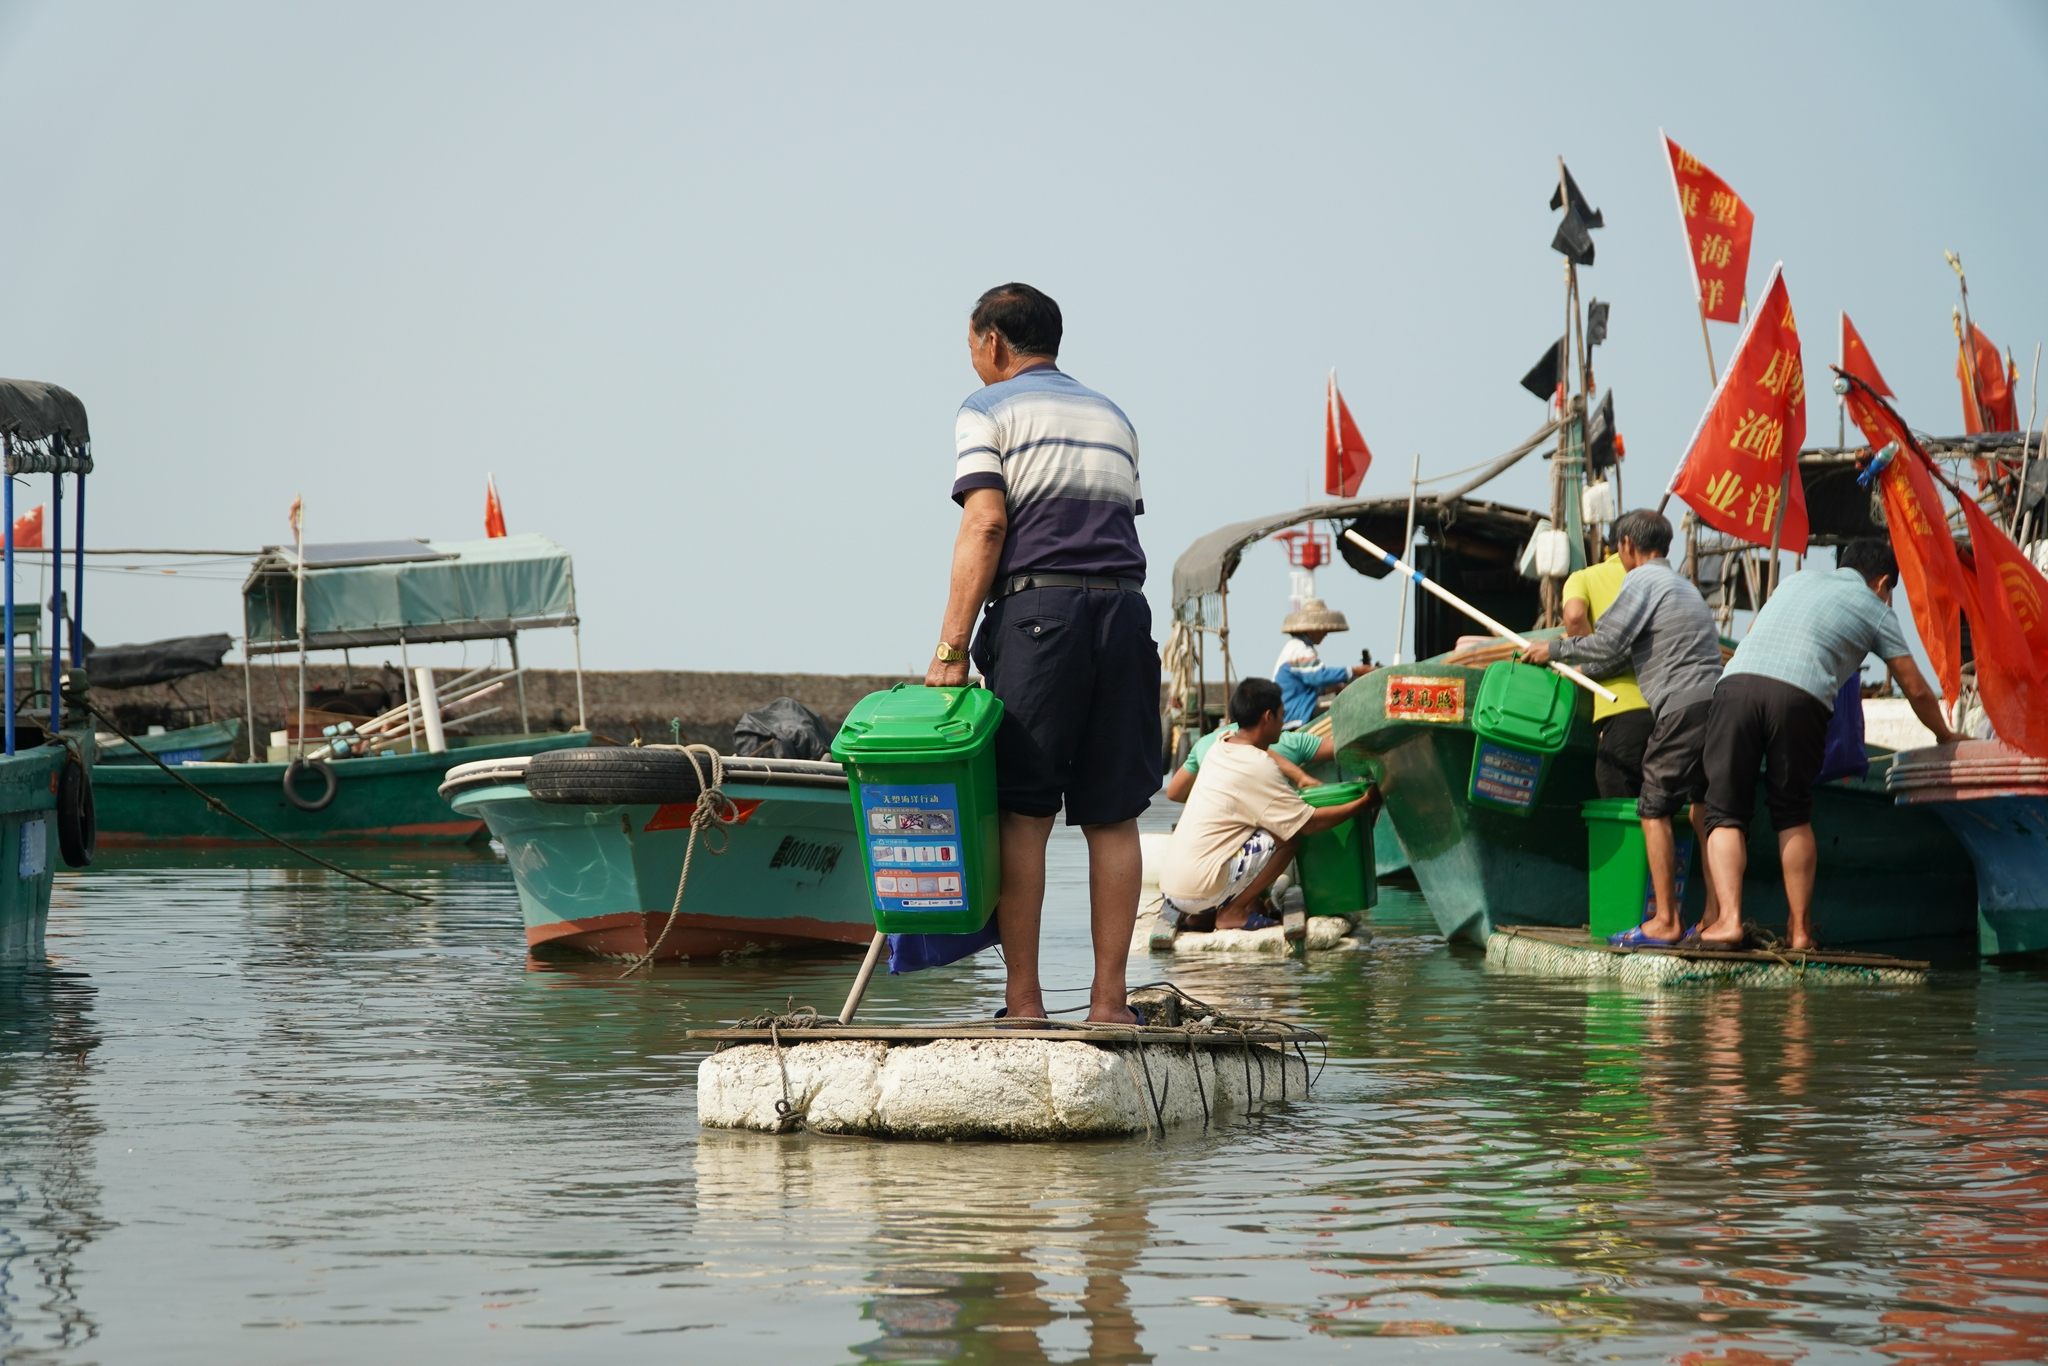 授人以渔可还行|渔民,渔村,渔业文化的被看见与自我看见|三亚市_新浪